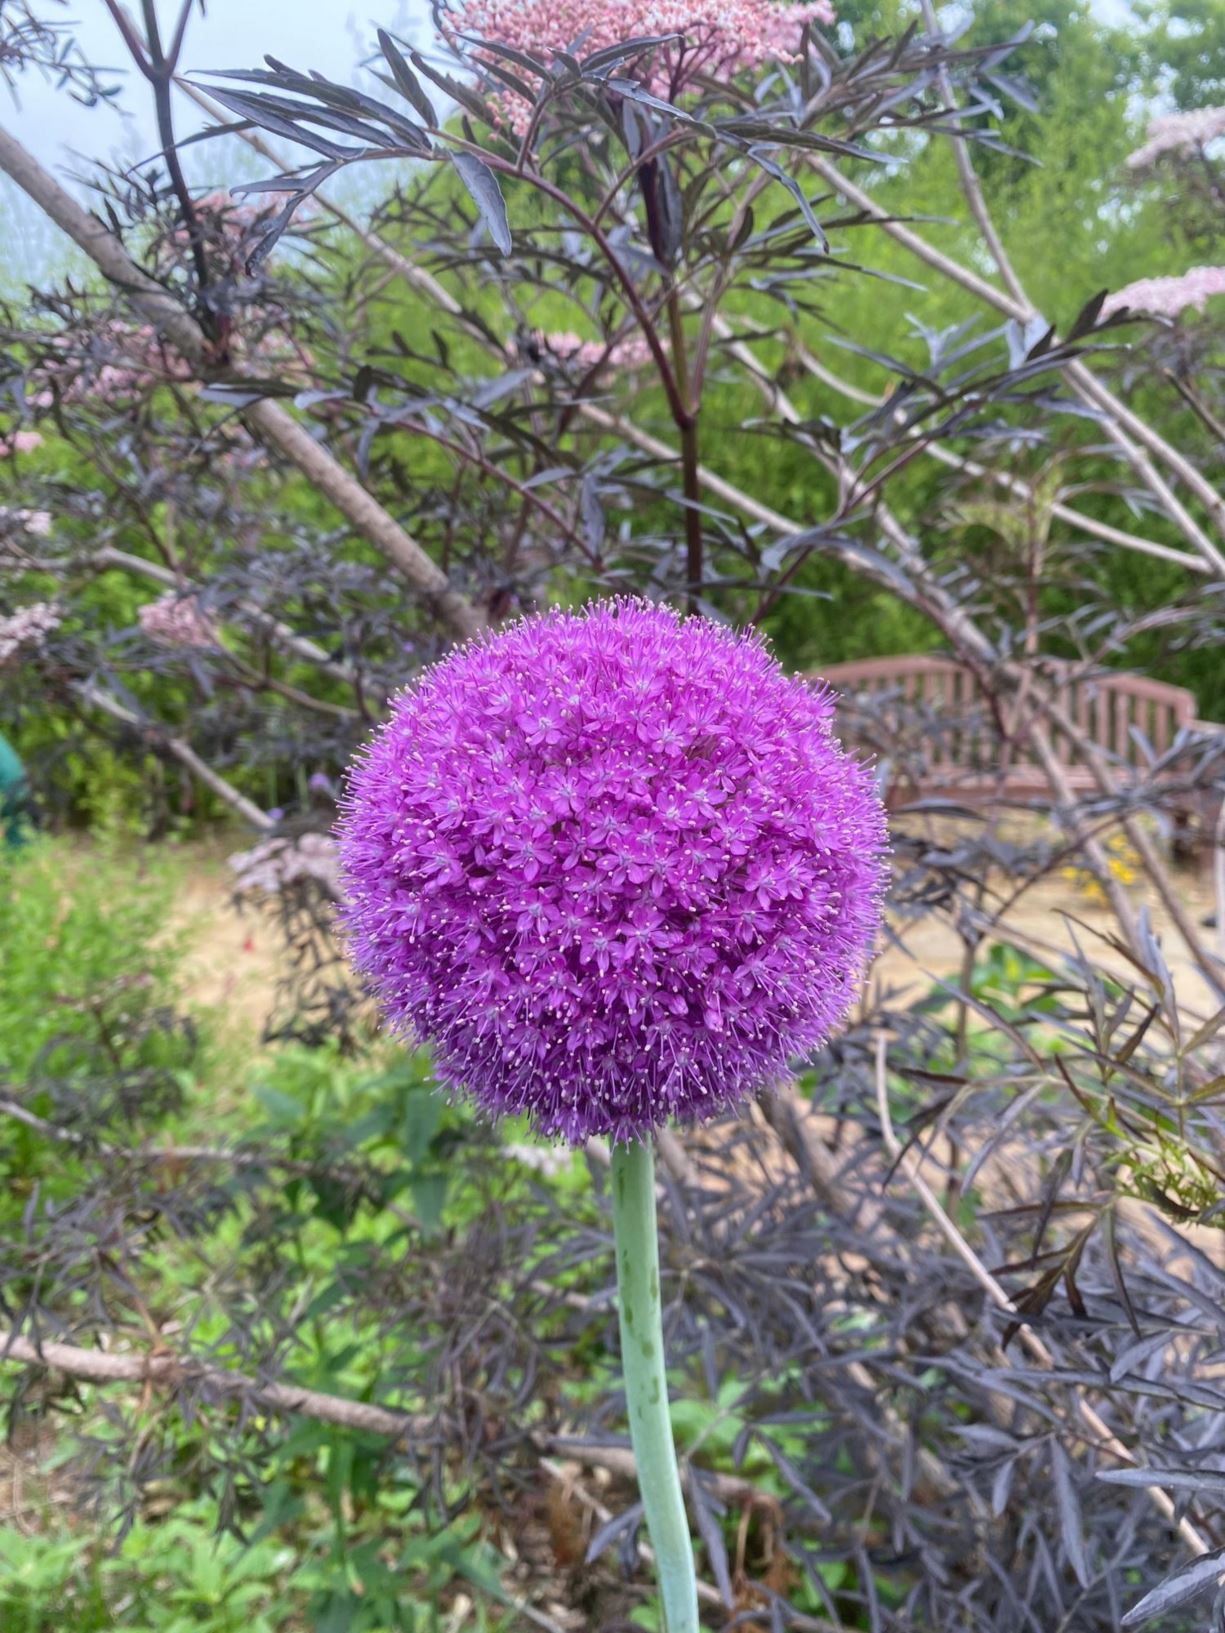 Allium giganteum - Ornamental Onion